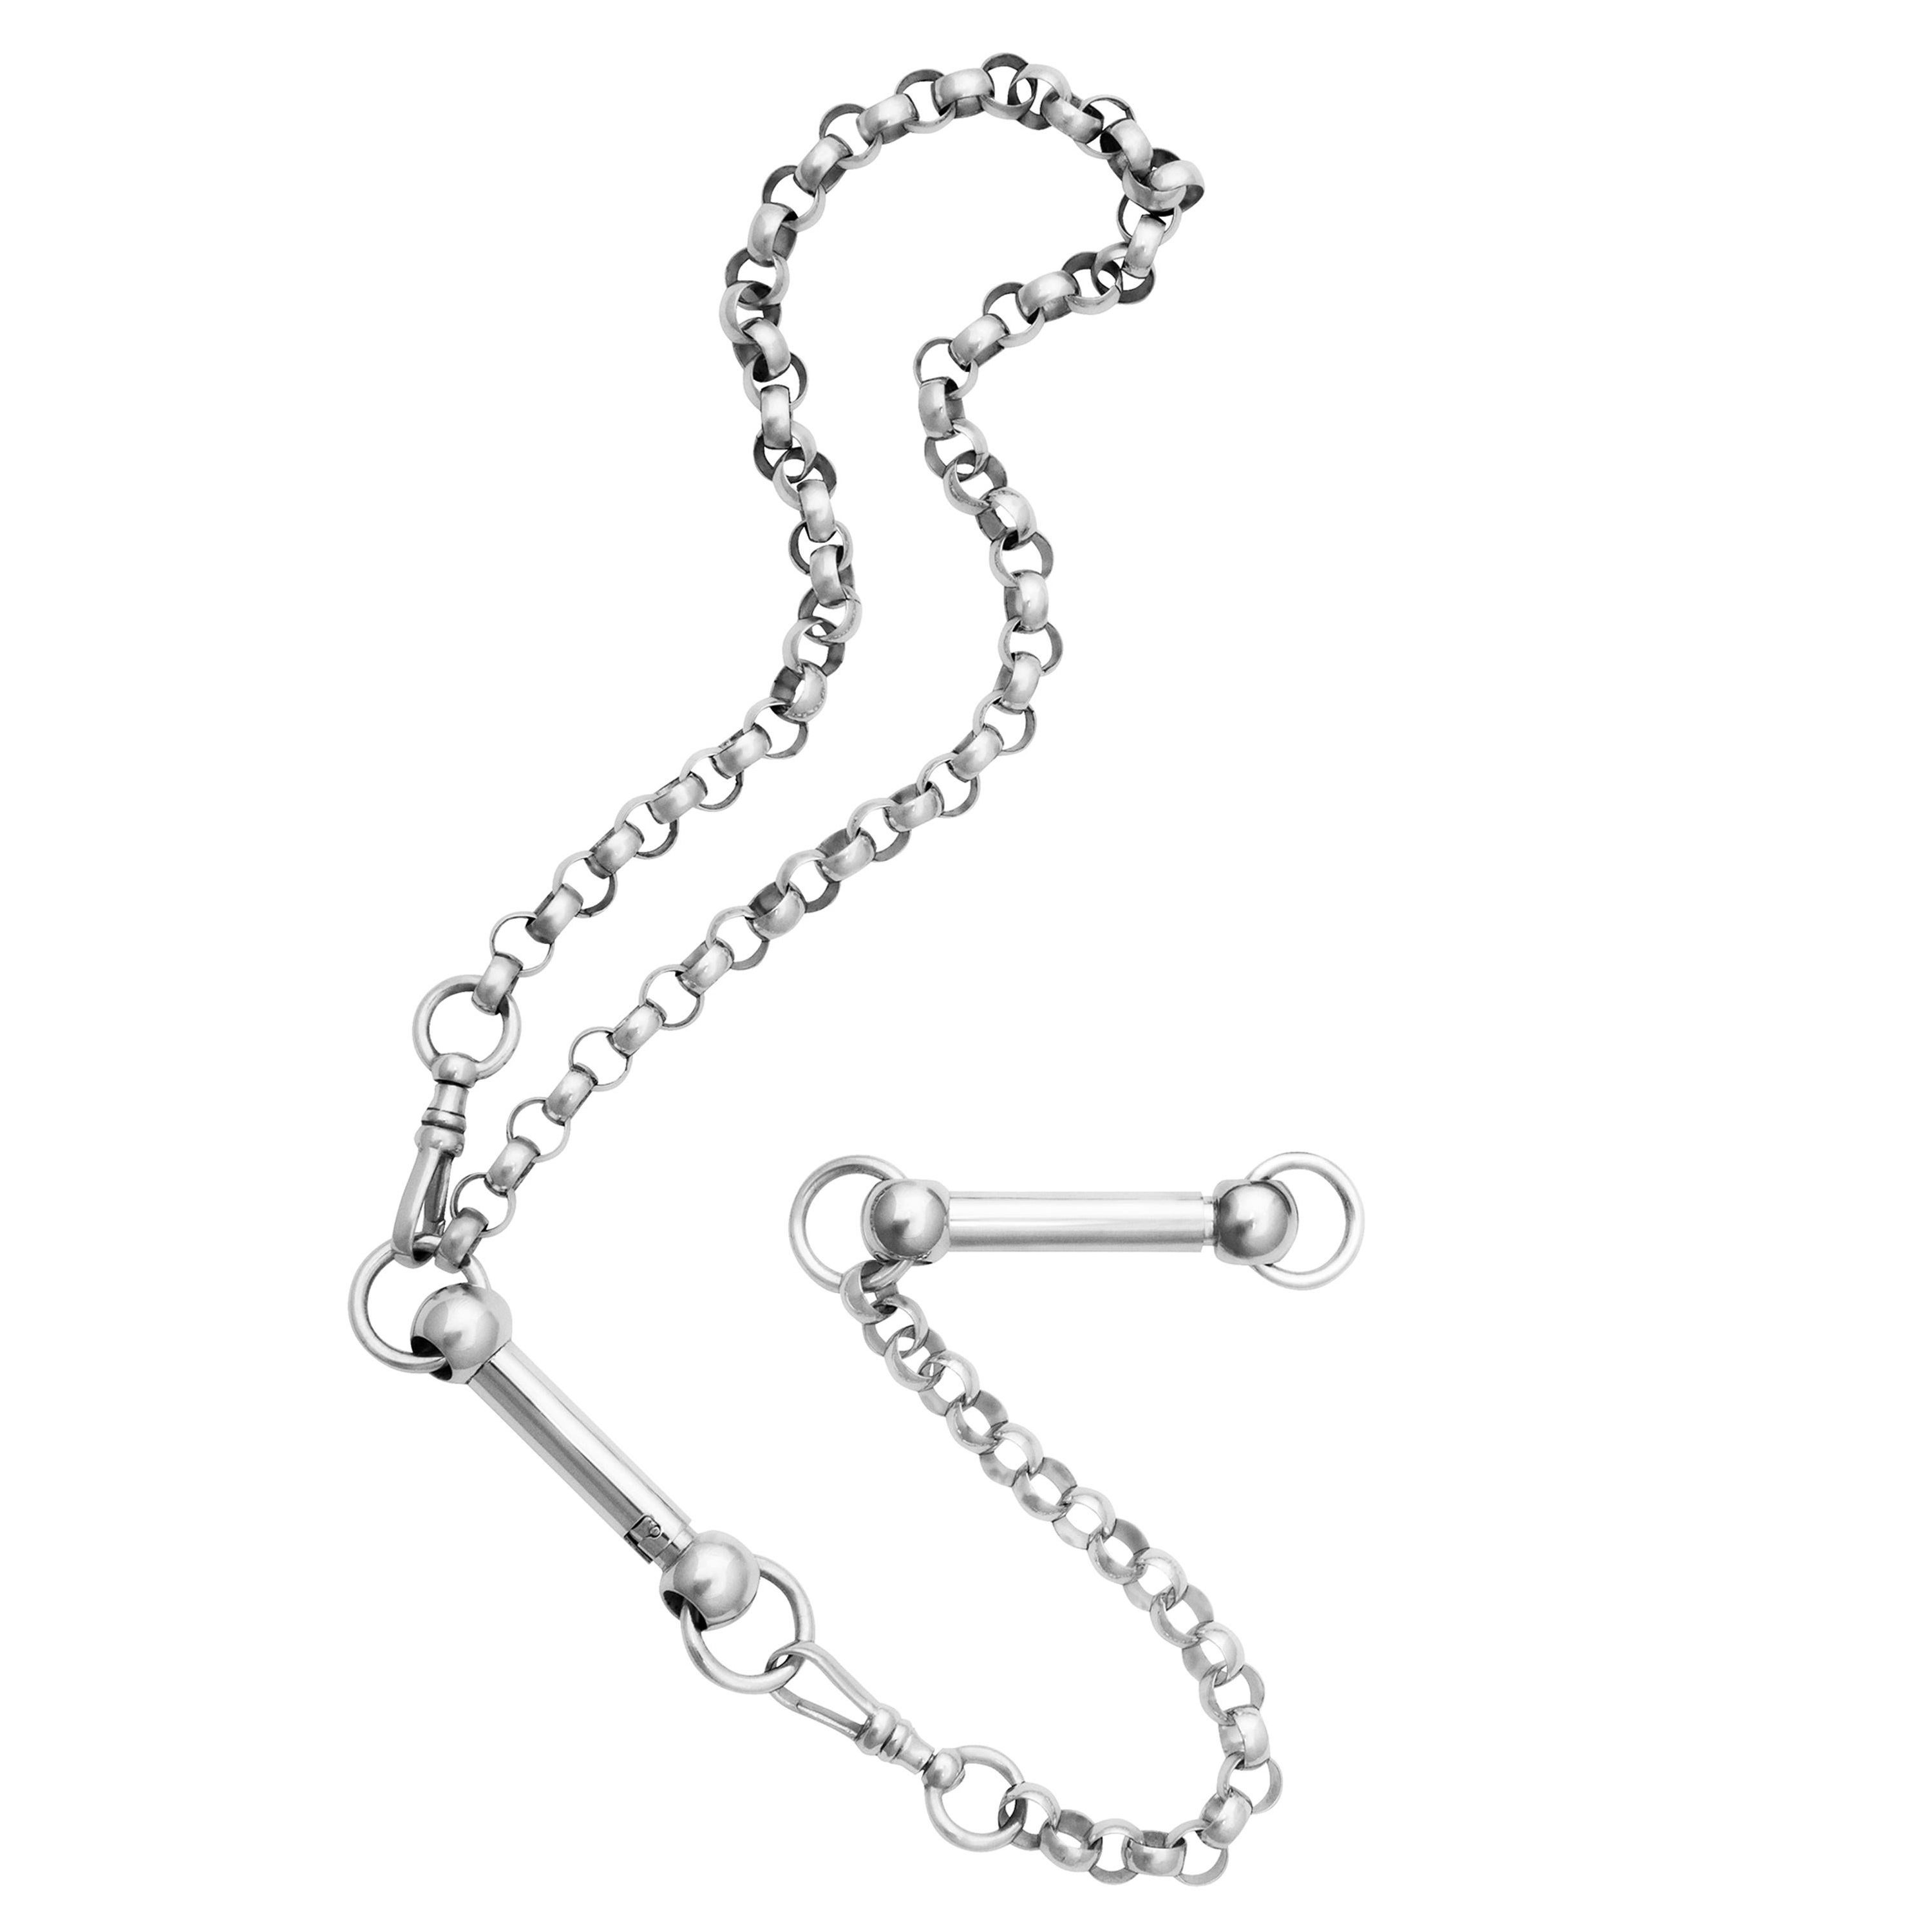 Betony Vernon "Mantra Kit" Bracelet and Necklace Sterling Silver 925